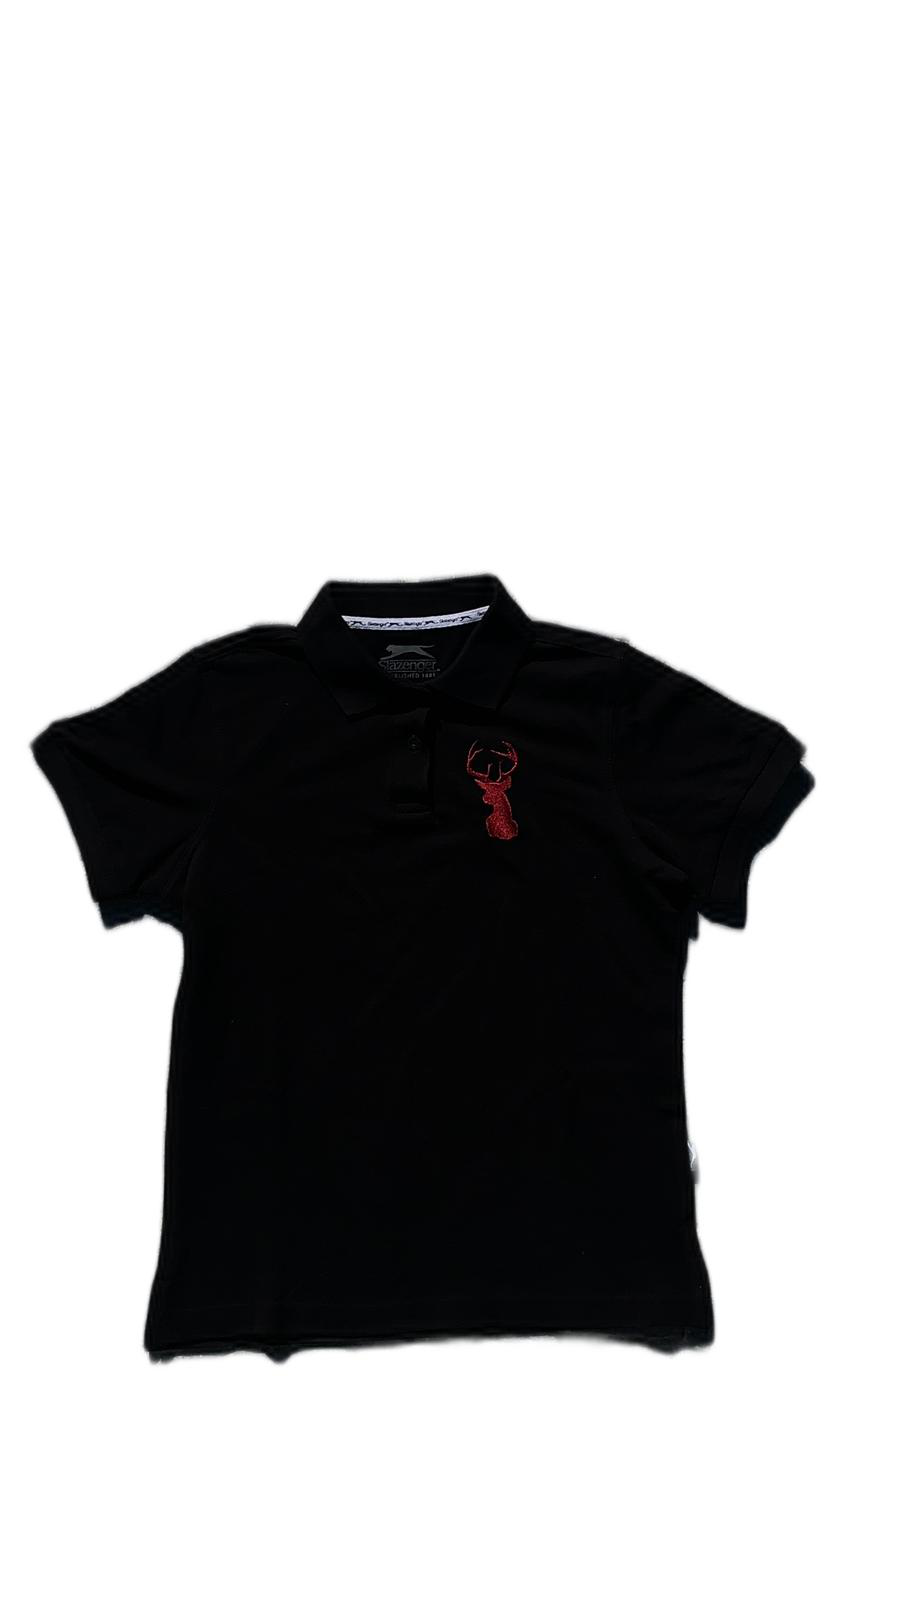 roter hirsch - Poloshirt in schwarz verschiedene Größen